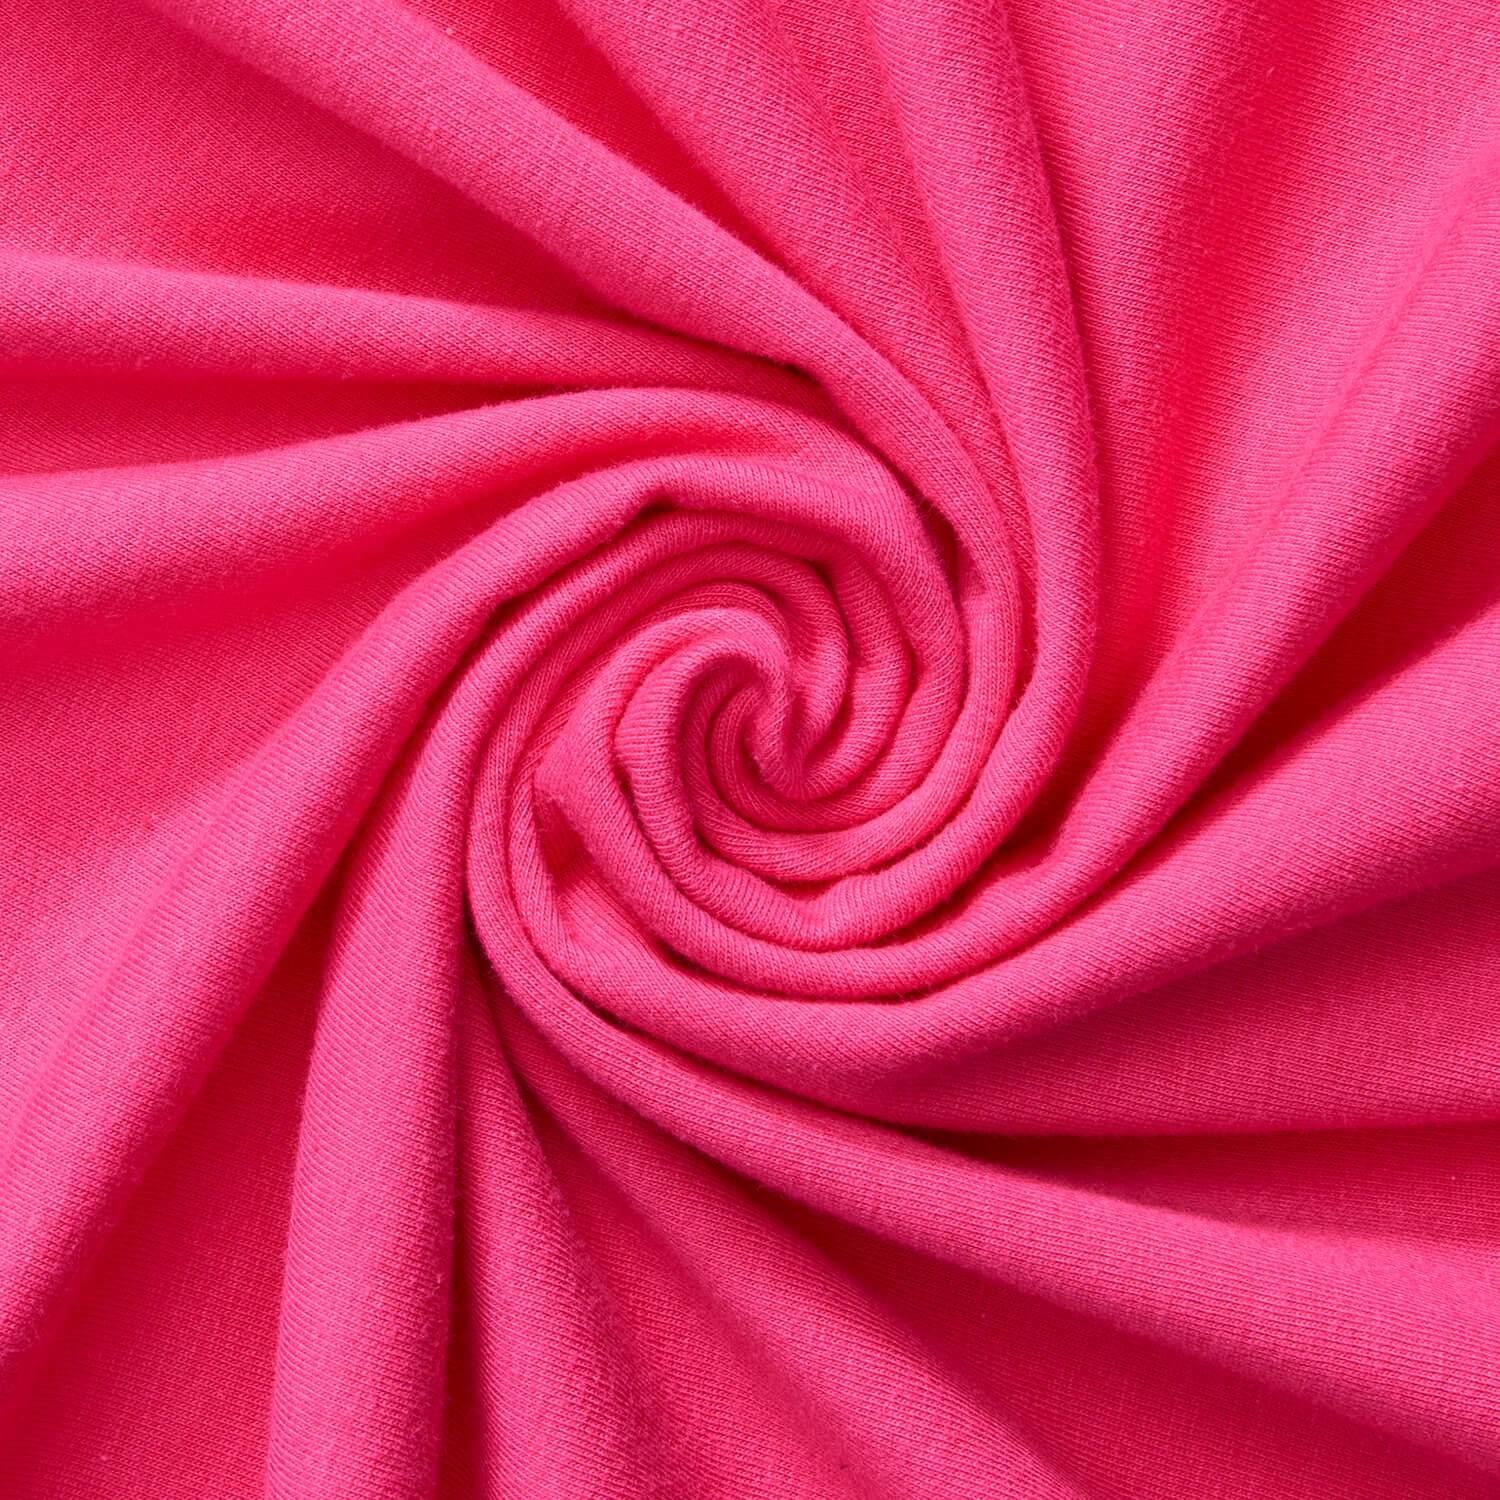 Cotton Jersey Lycra Spandex knit Stretch Fabric 58/60 wide (Royal